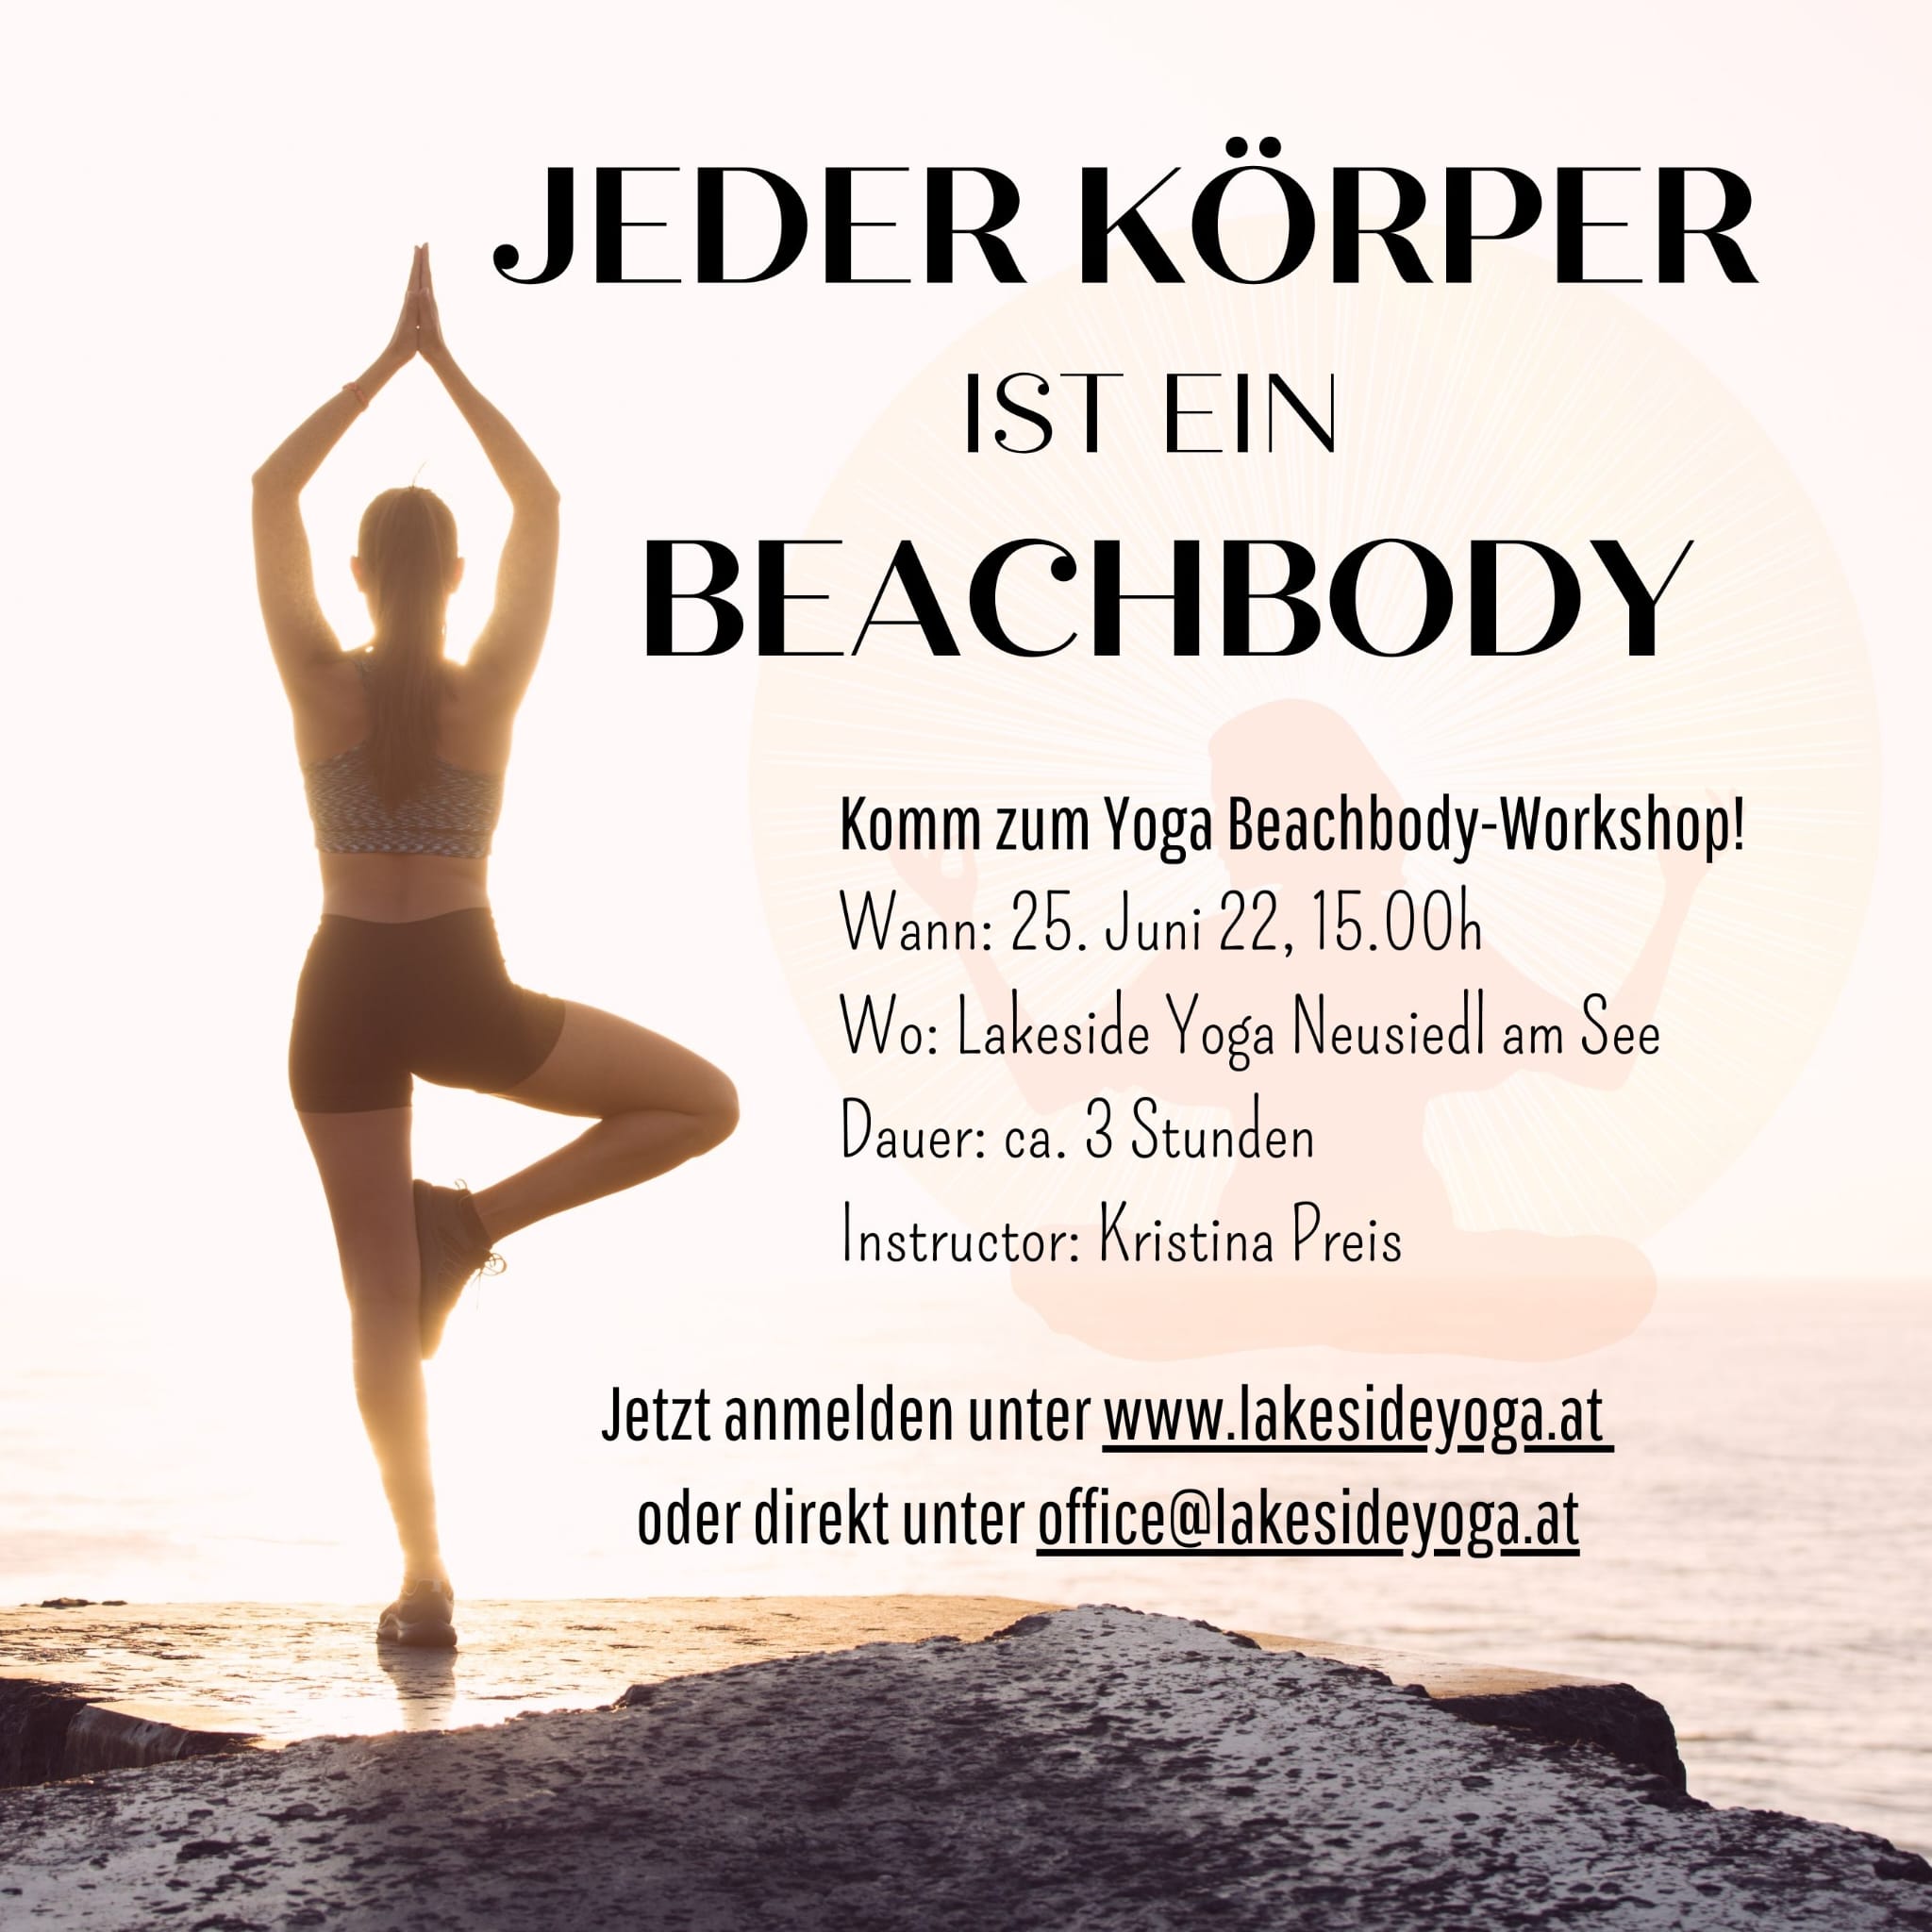 Workshop: Jeder Körper ist ein Beachbody 25. Juni 15:00